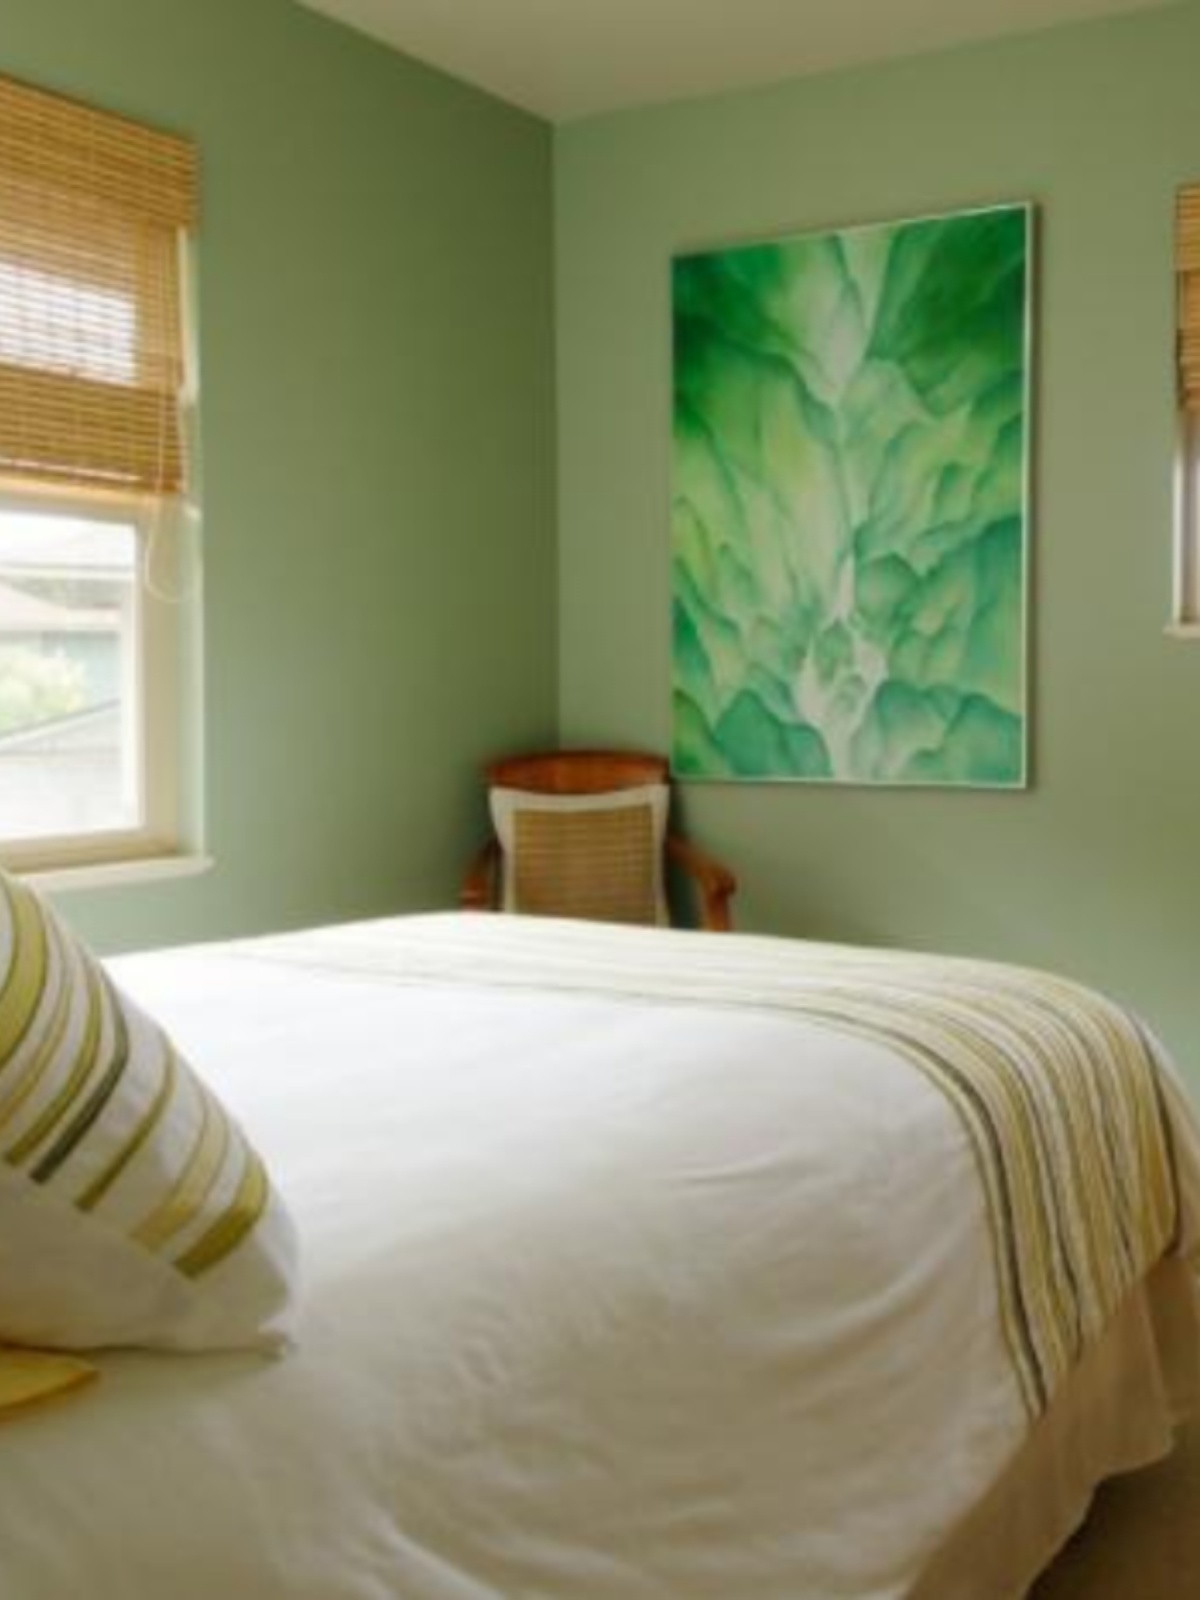 冬净青乳胶漆绿色家装味墙面哑光系室内莴苣内墙保环水性涂料装修